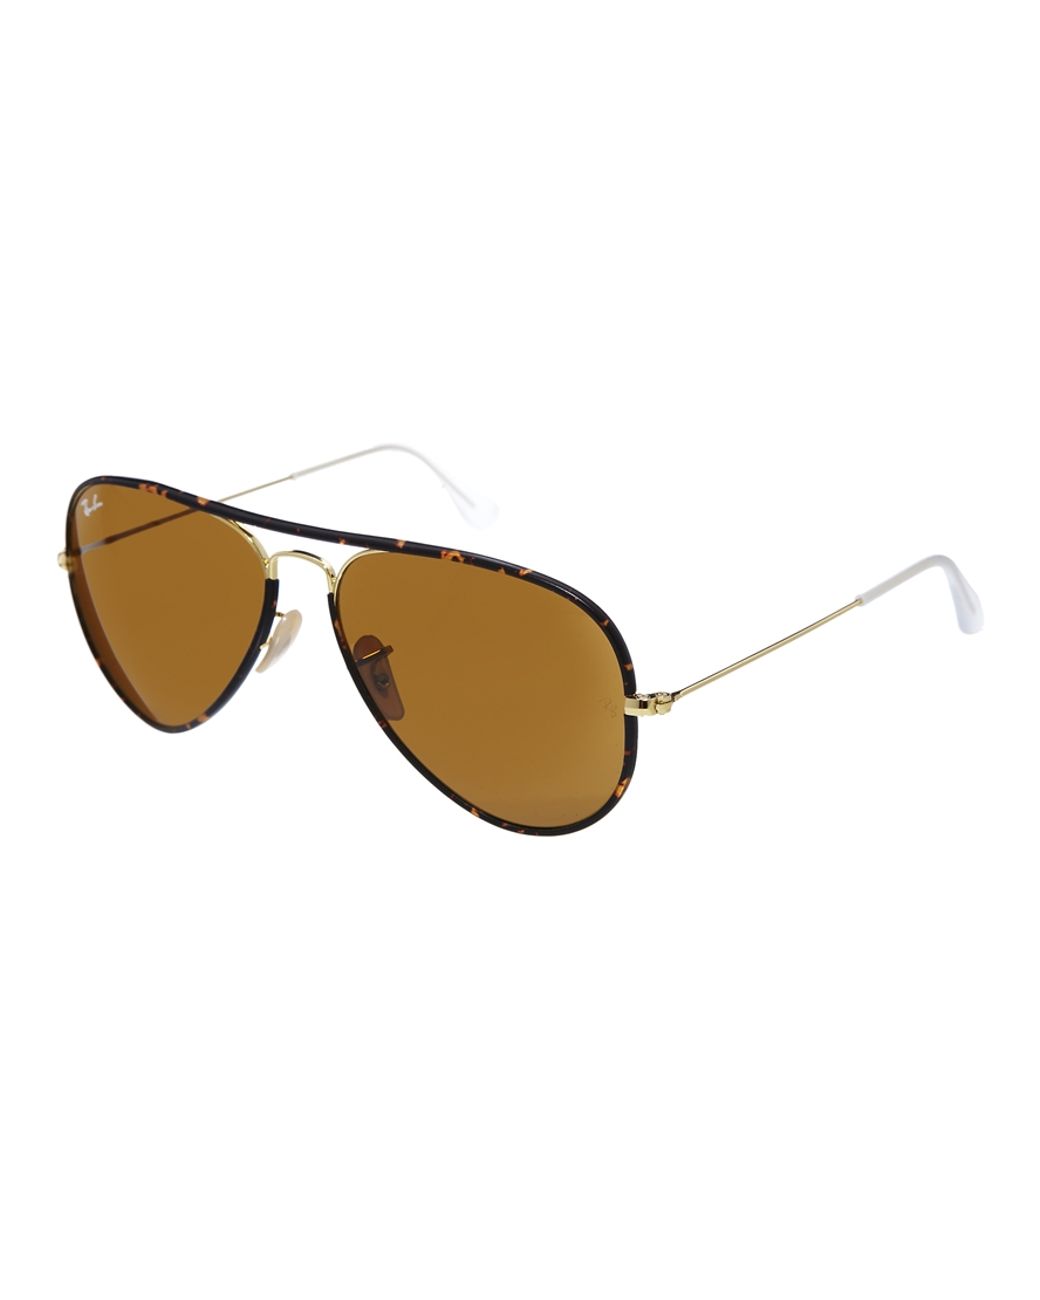 Ray-Ban Tortoiseshell Aviator Sunglasses in Brown | Lyst